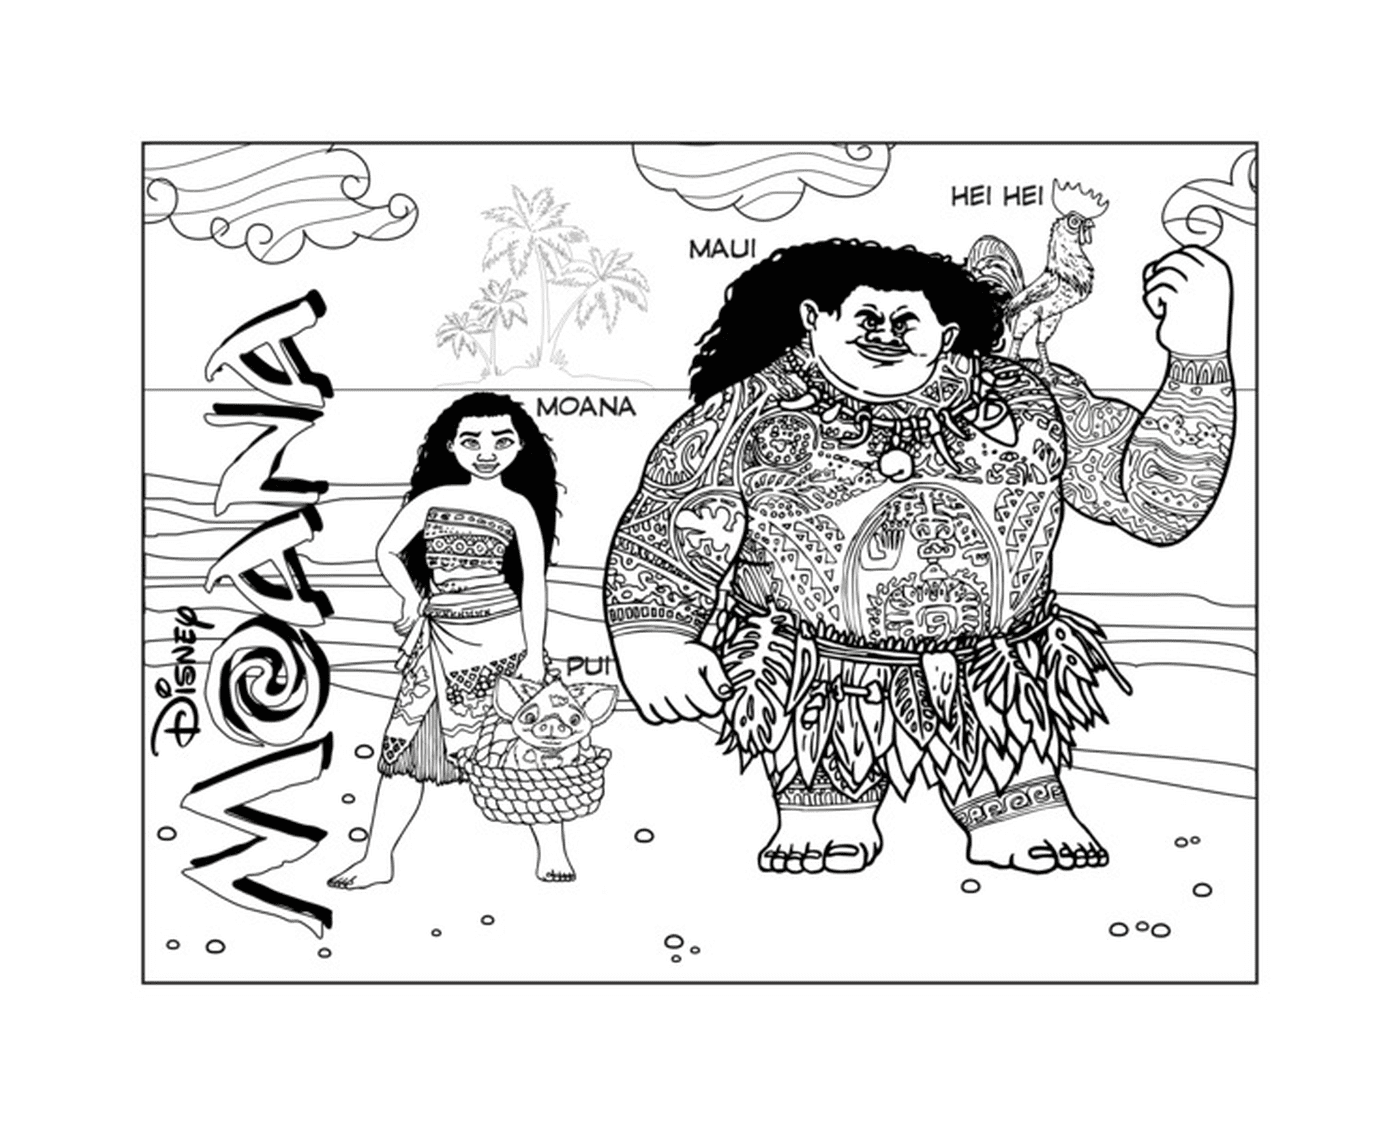   Moana et Maui, duo d'aventuriers 